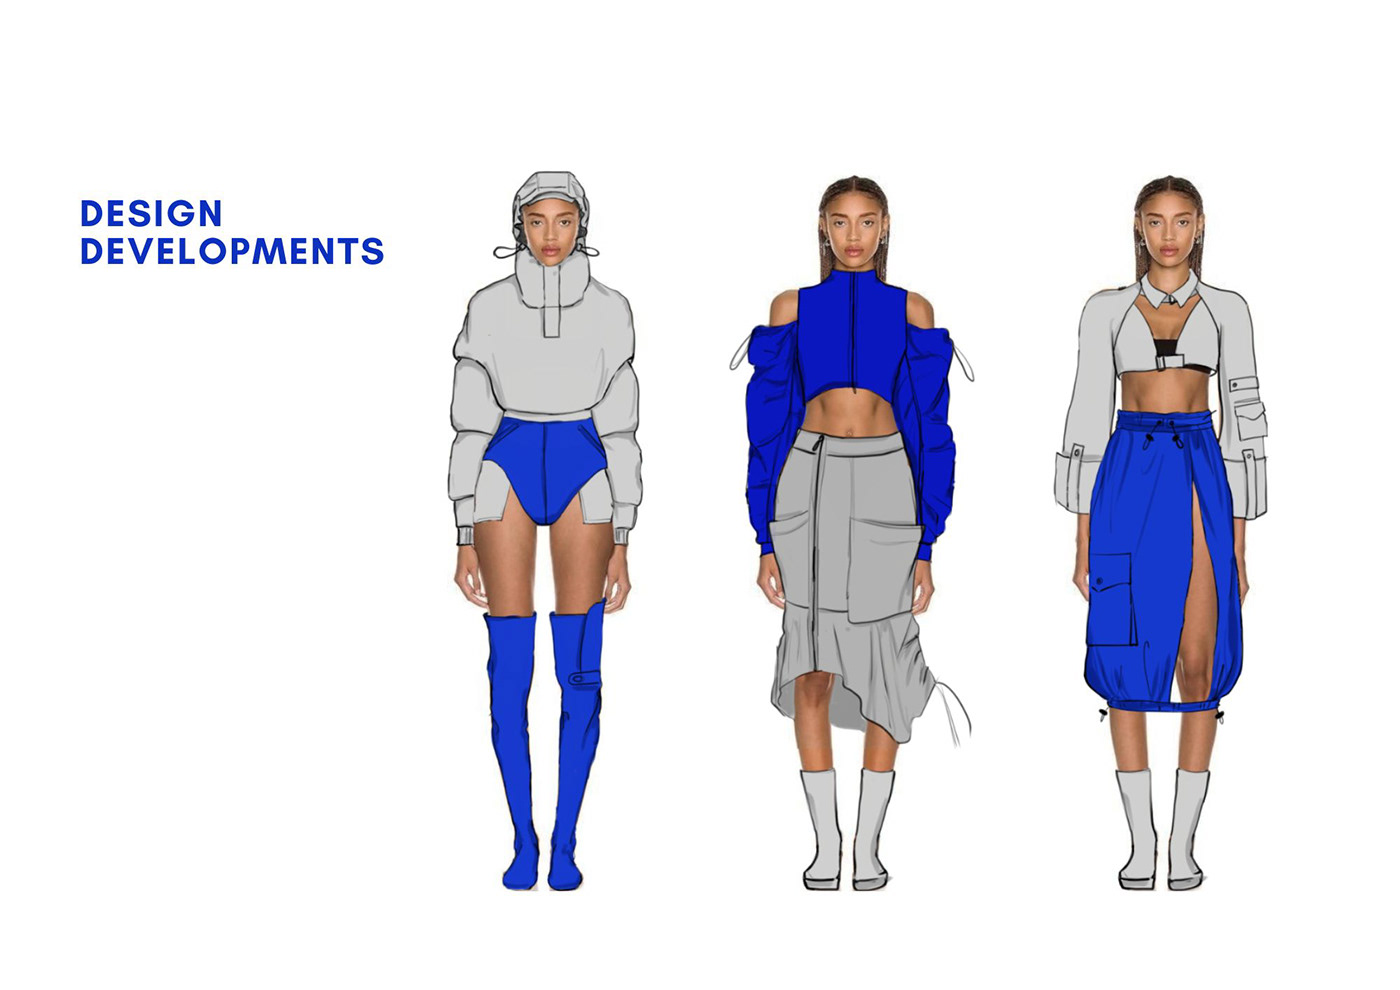 Fashion  fashion illustration adobedraw digital illustration Drawing  ILLUSTRATION  moodboard Gorpcore streetwear 𝖠𝖽𝗈𝖻𝖾 𝖨𝗅𝗅𝗎𝗌𝗍𝗋𝖺𝗍𝗈𝗋